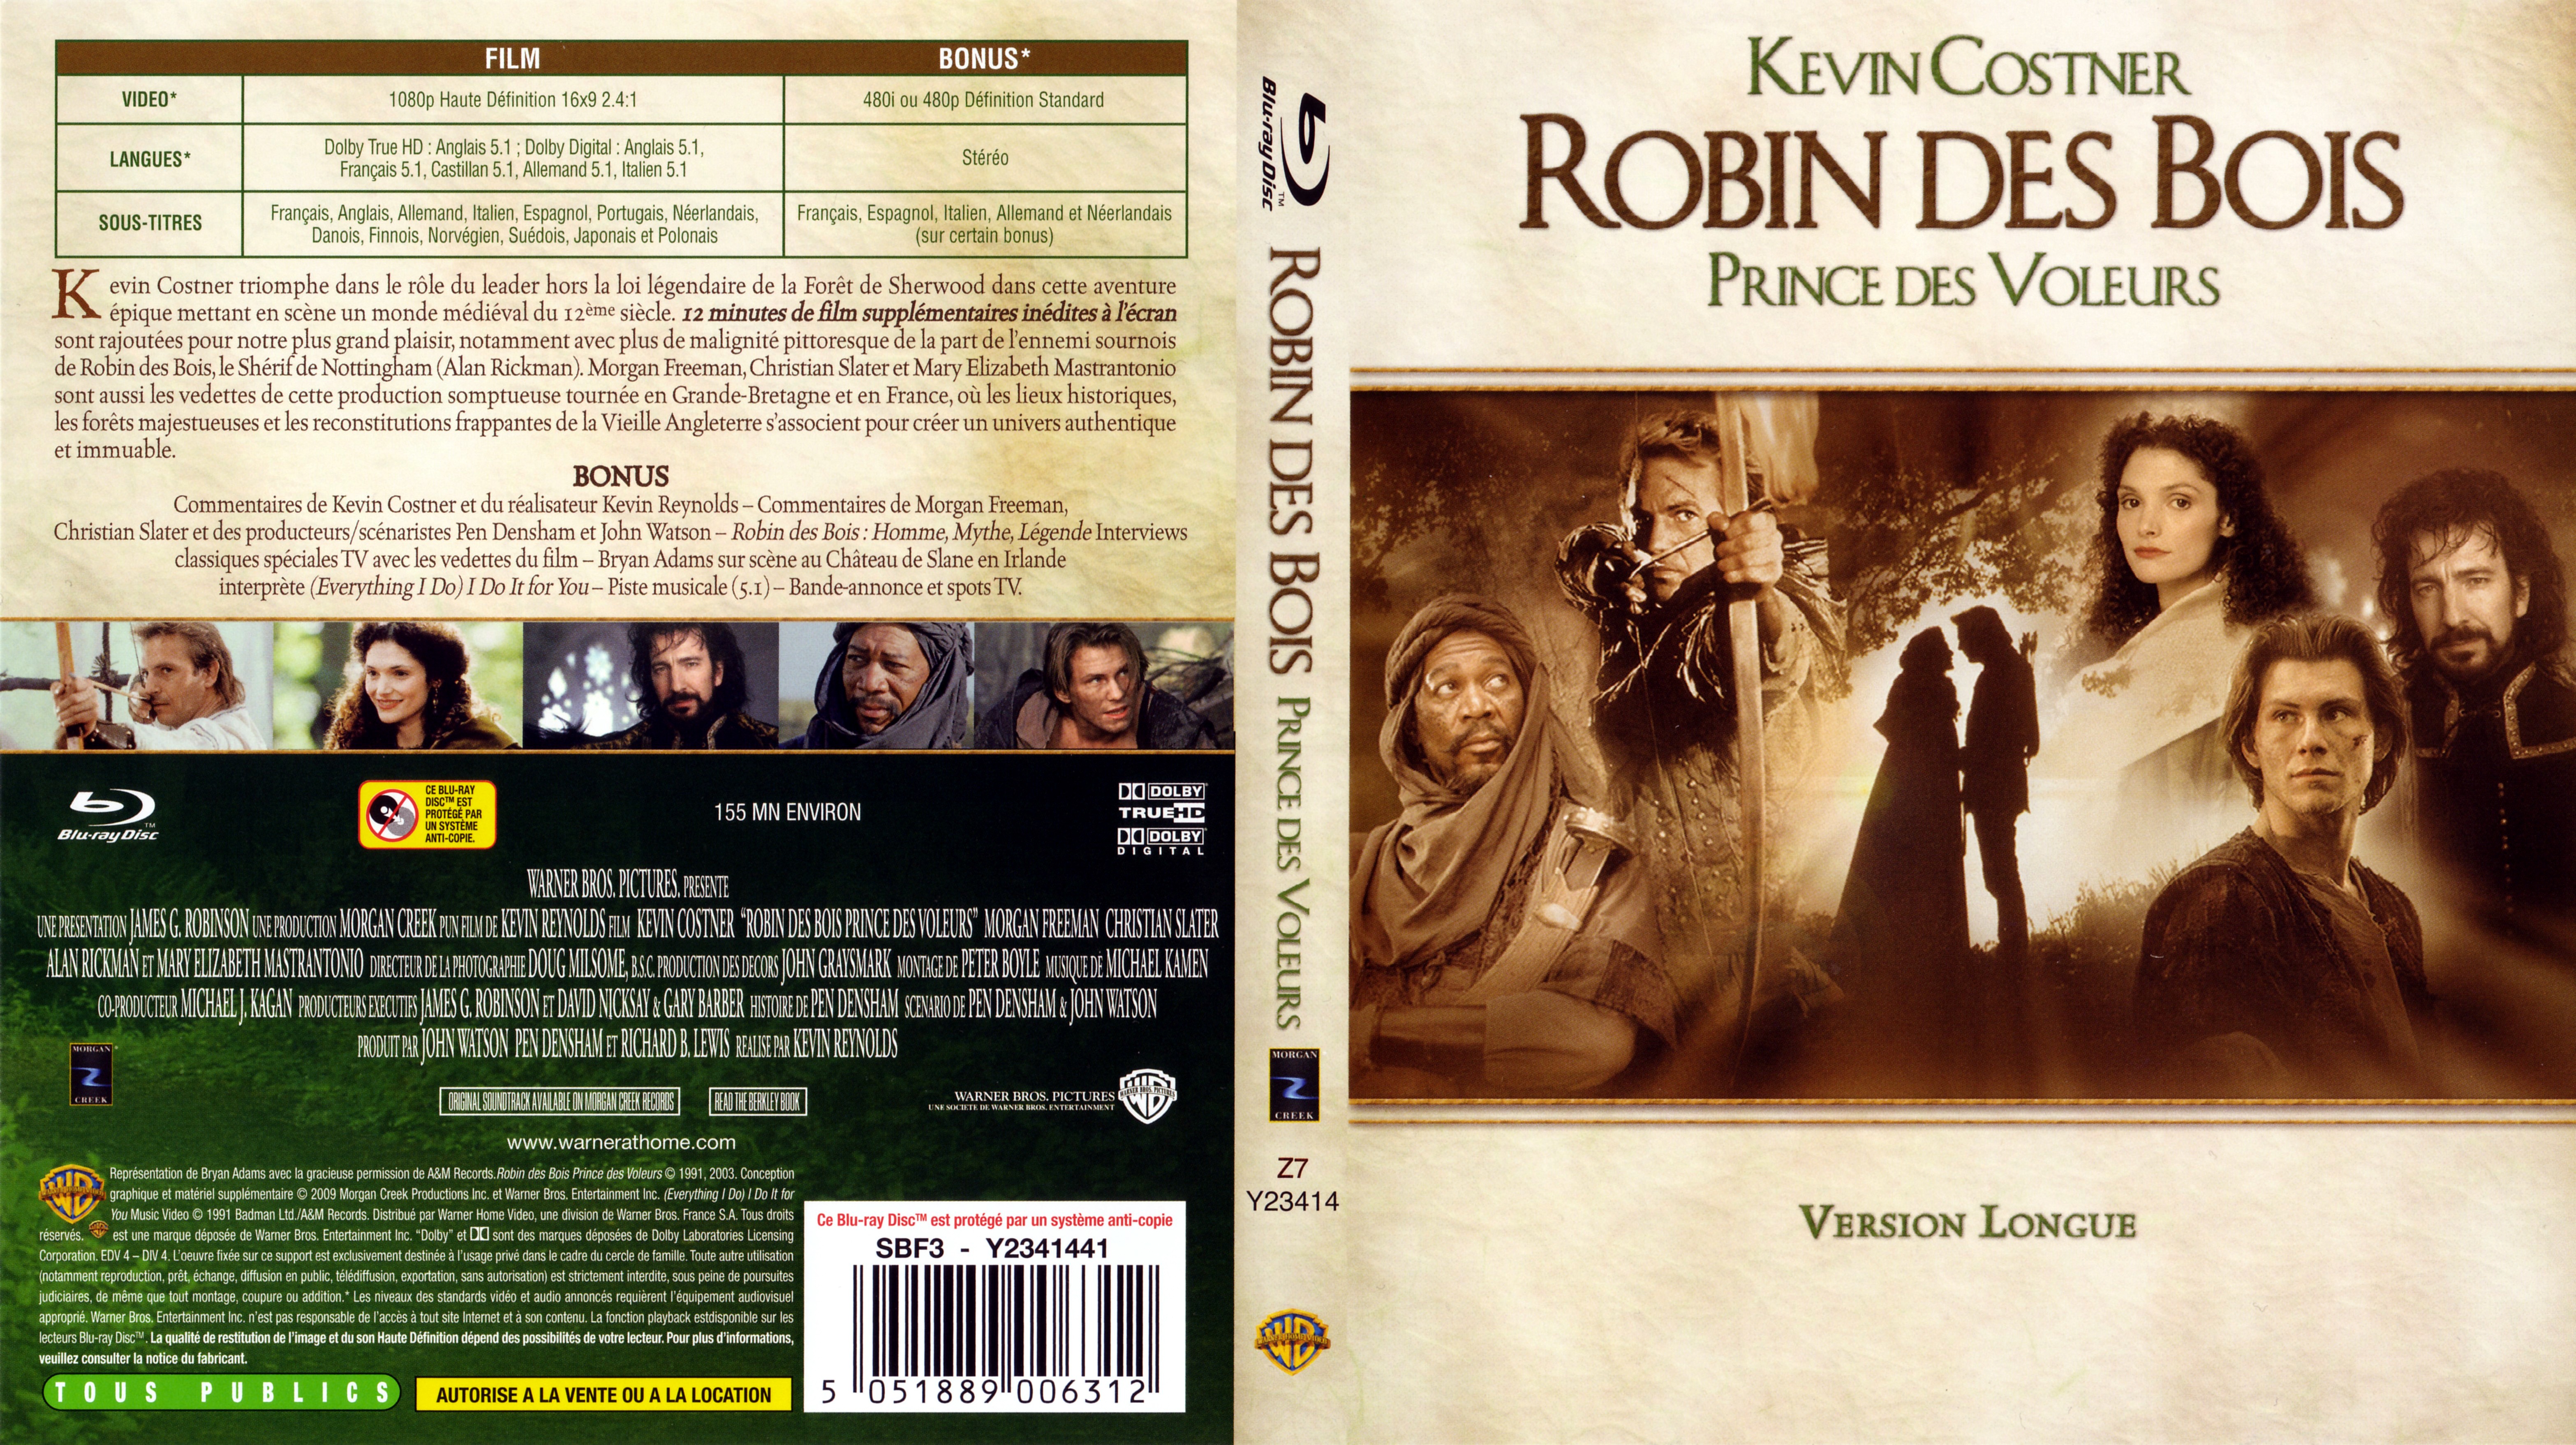 Jaquette DVD Robin des bois prince des voleurs (BLU-RAY)